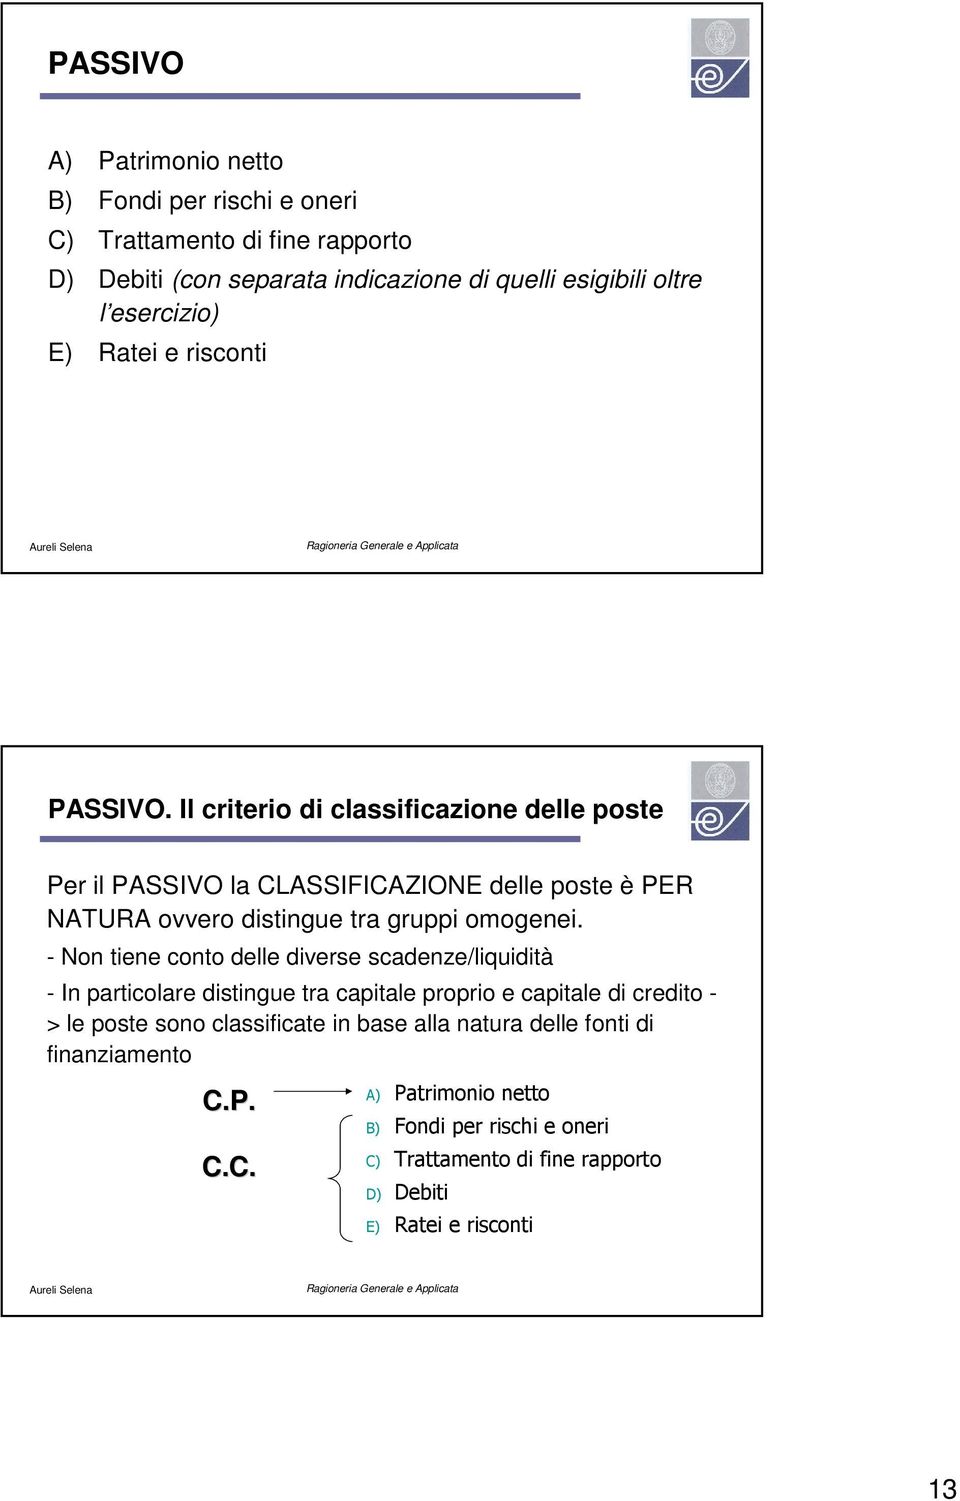 Il criterio di classificazione delle poste Per il PASSIVO la CLASSIFICAZIONE delle poste è PER NATURA ovvero distingue tra gruppi omogenei.